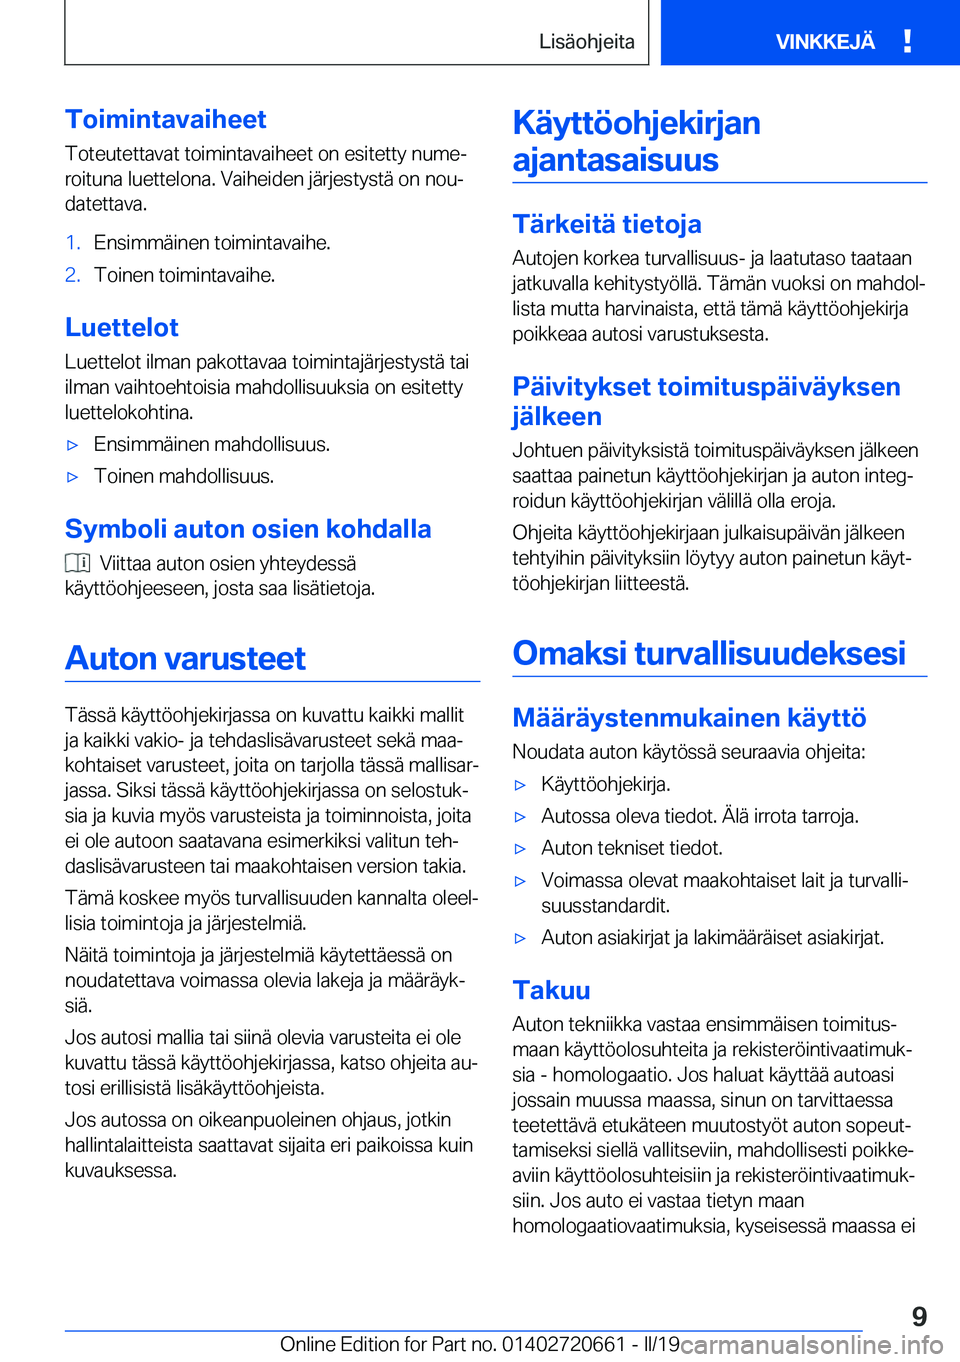 BMW M2 2020  Omistajan Käsikirja (in Finnish) �T�o�i�m�i�n�t�a�v�a�i�h�e�e�t�T�o�t�e�u�t�e�t�t�a�v�a�t��t�o�i�m�i�n�t�a�v�a�i�h�e�e�t��o�n��e�s�i�t�e�t�t�y��n�u�m�ej
�r�o�i�t�u�n�a��l�u�e�t�t�e�l�o�n�a�.��V�a�i�h�e�i�d�e�n��j�